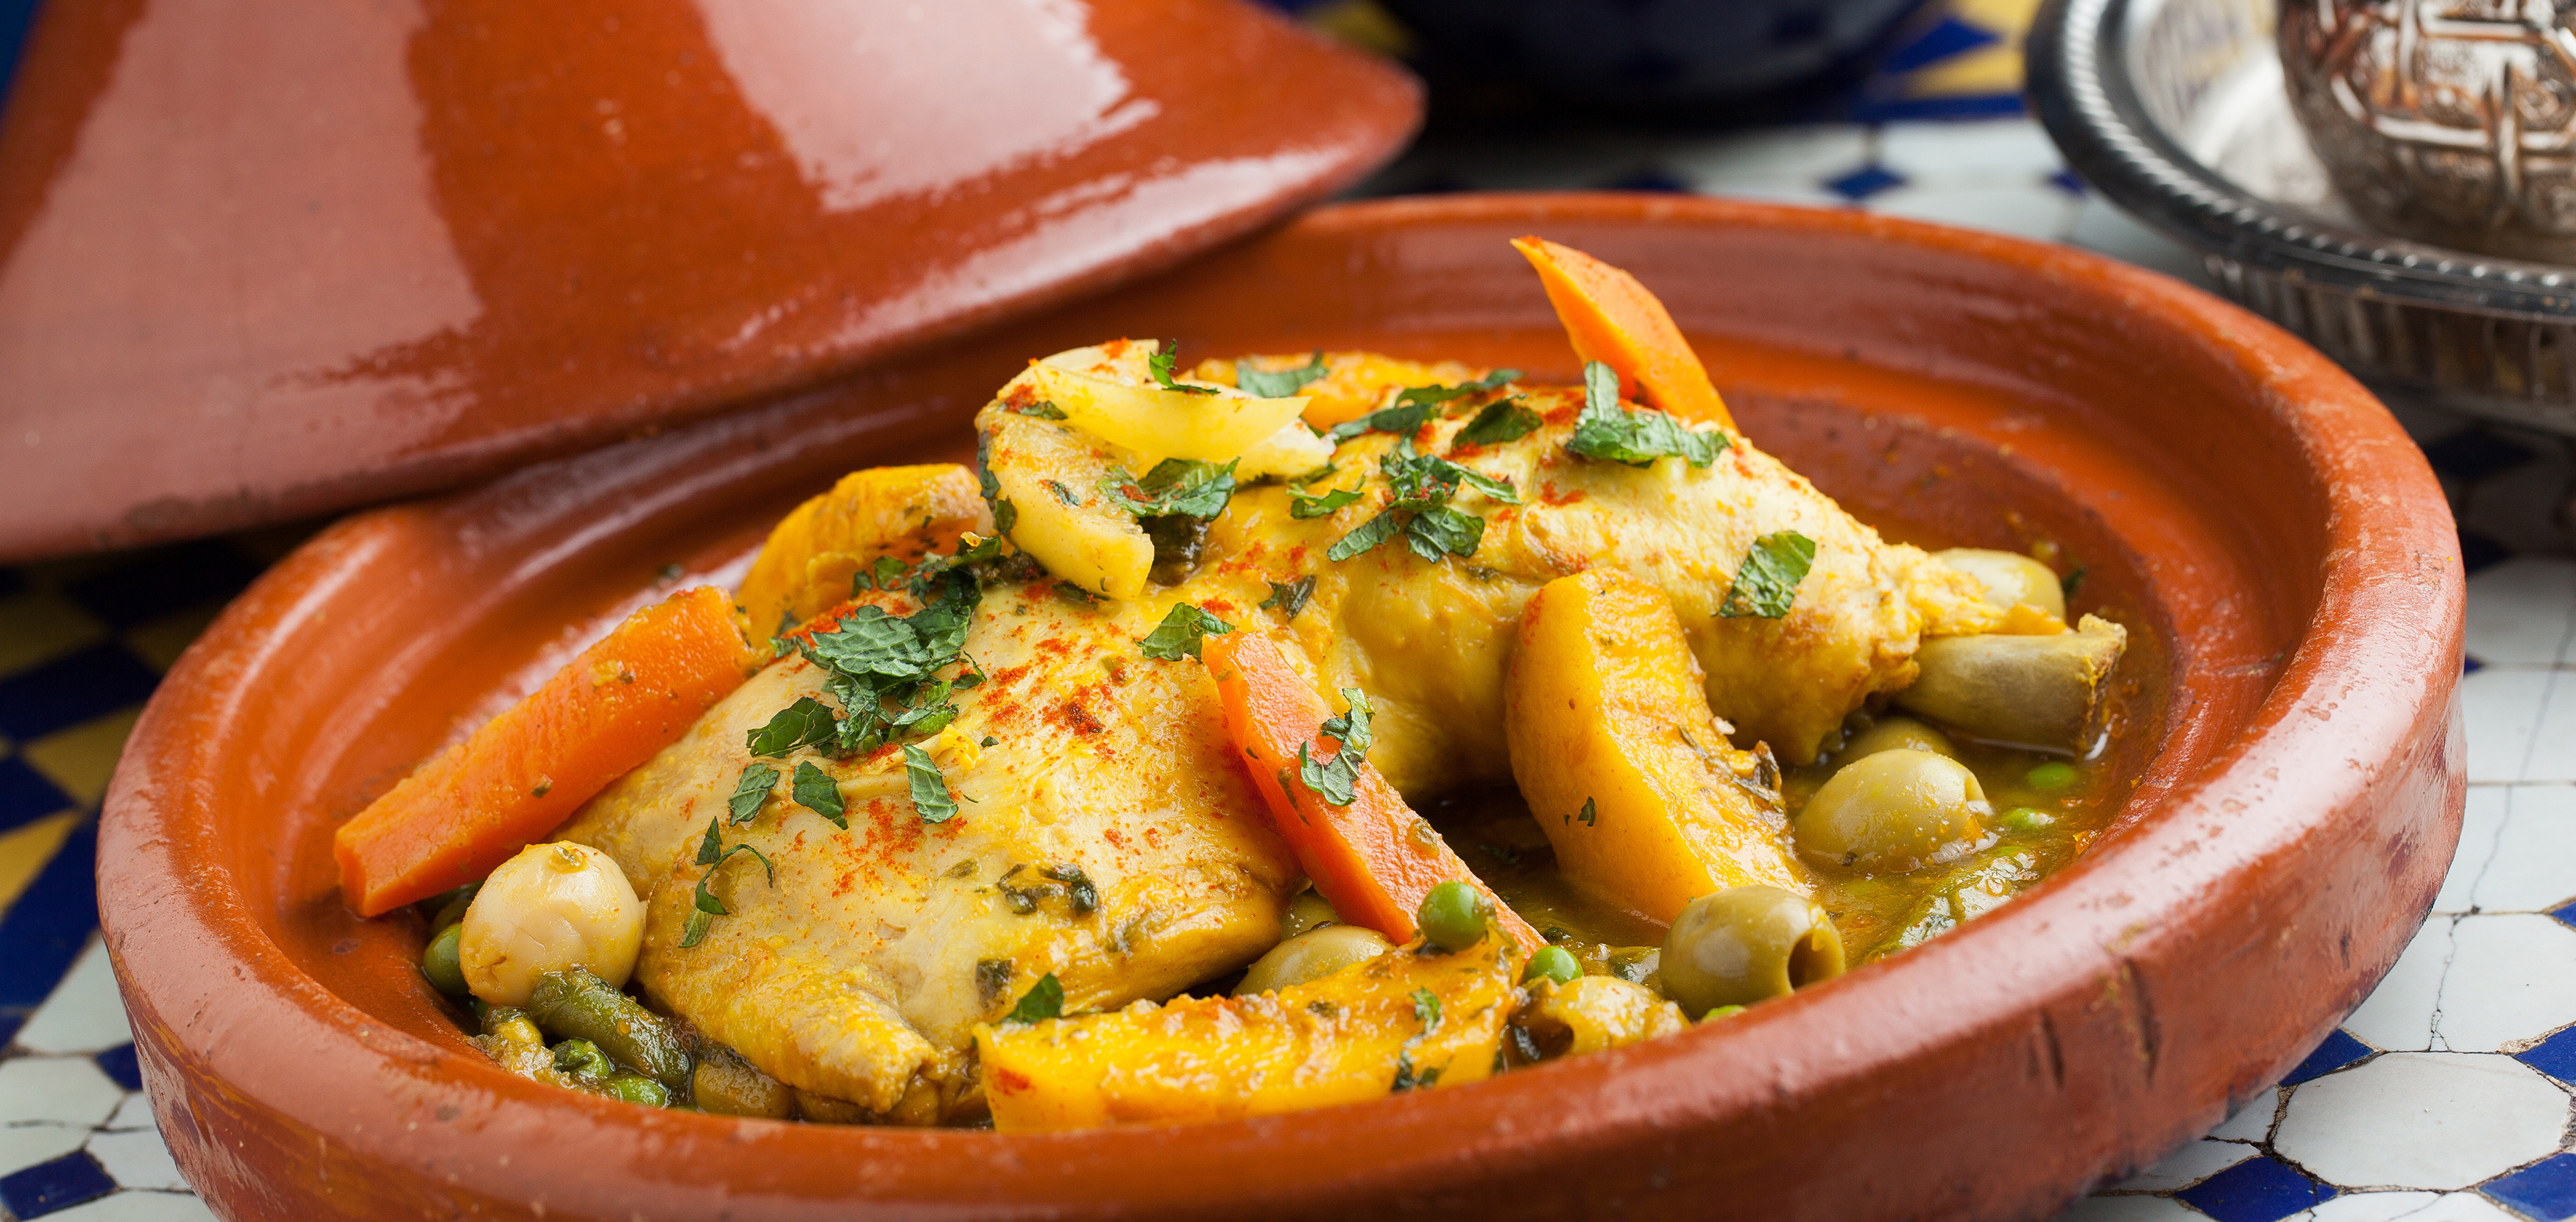 Chicken Tajine Traditional Stew From Morocco TasteAtlas.